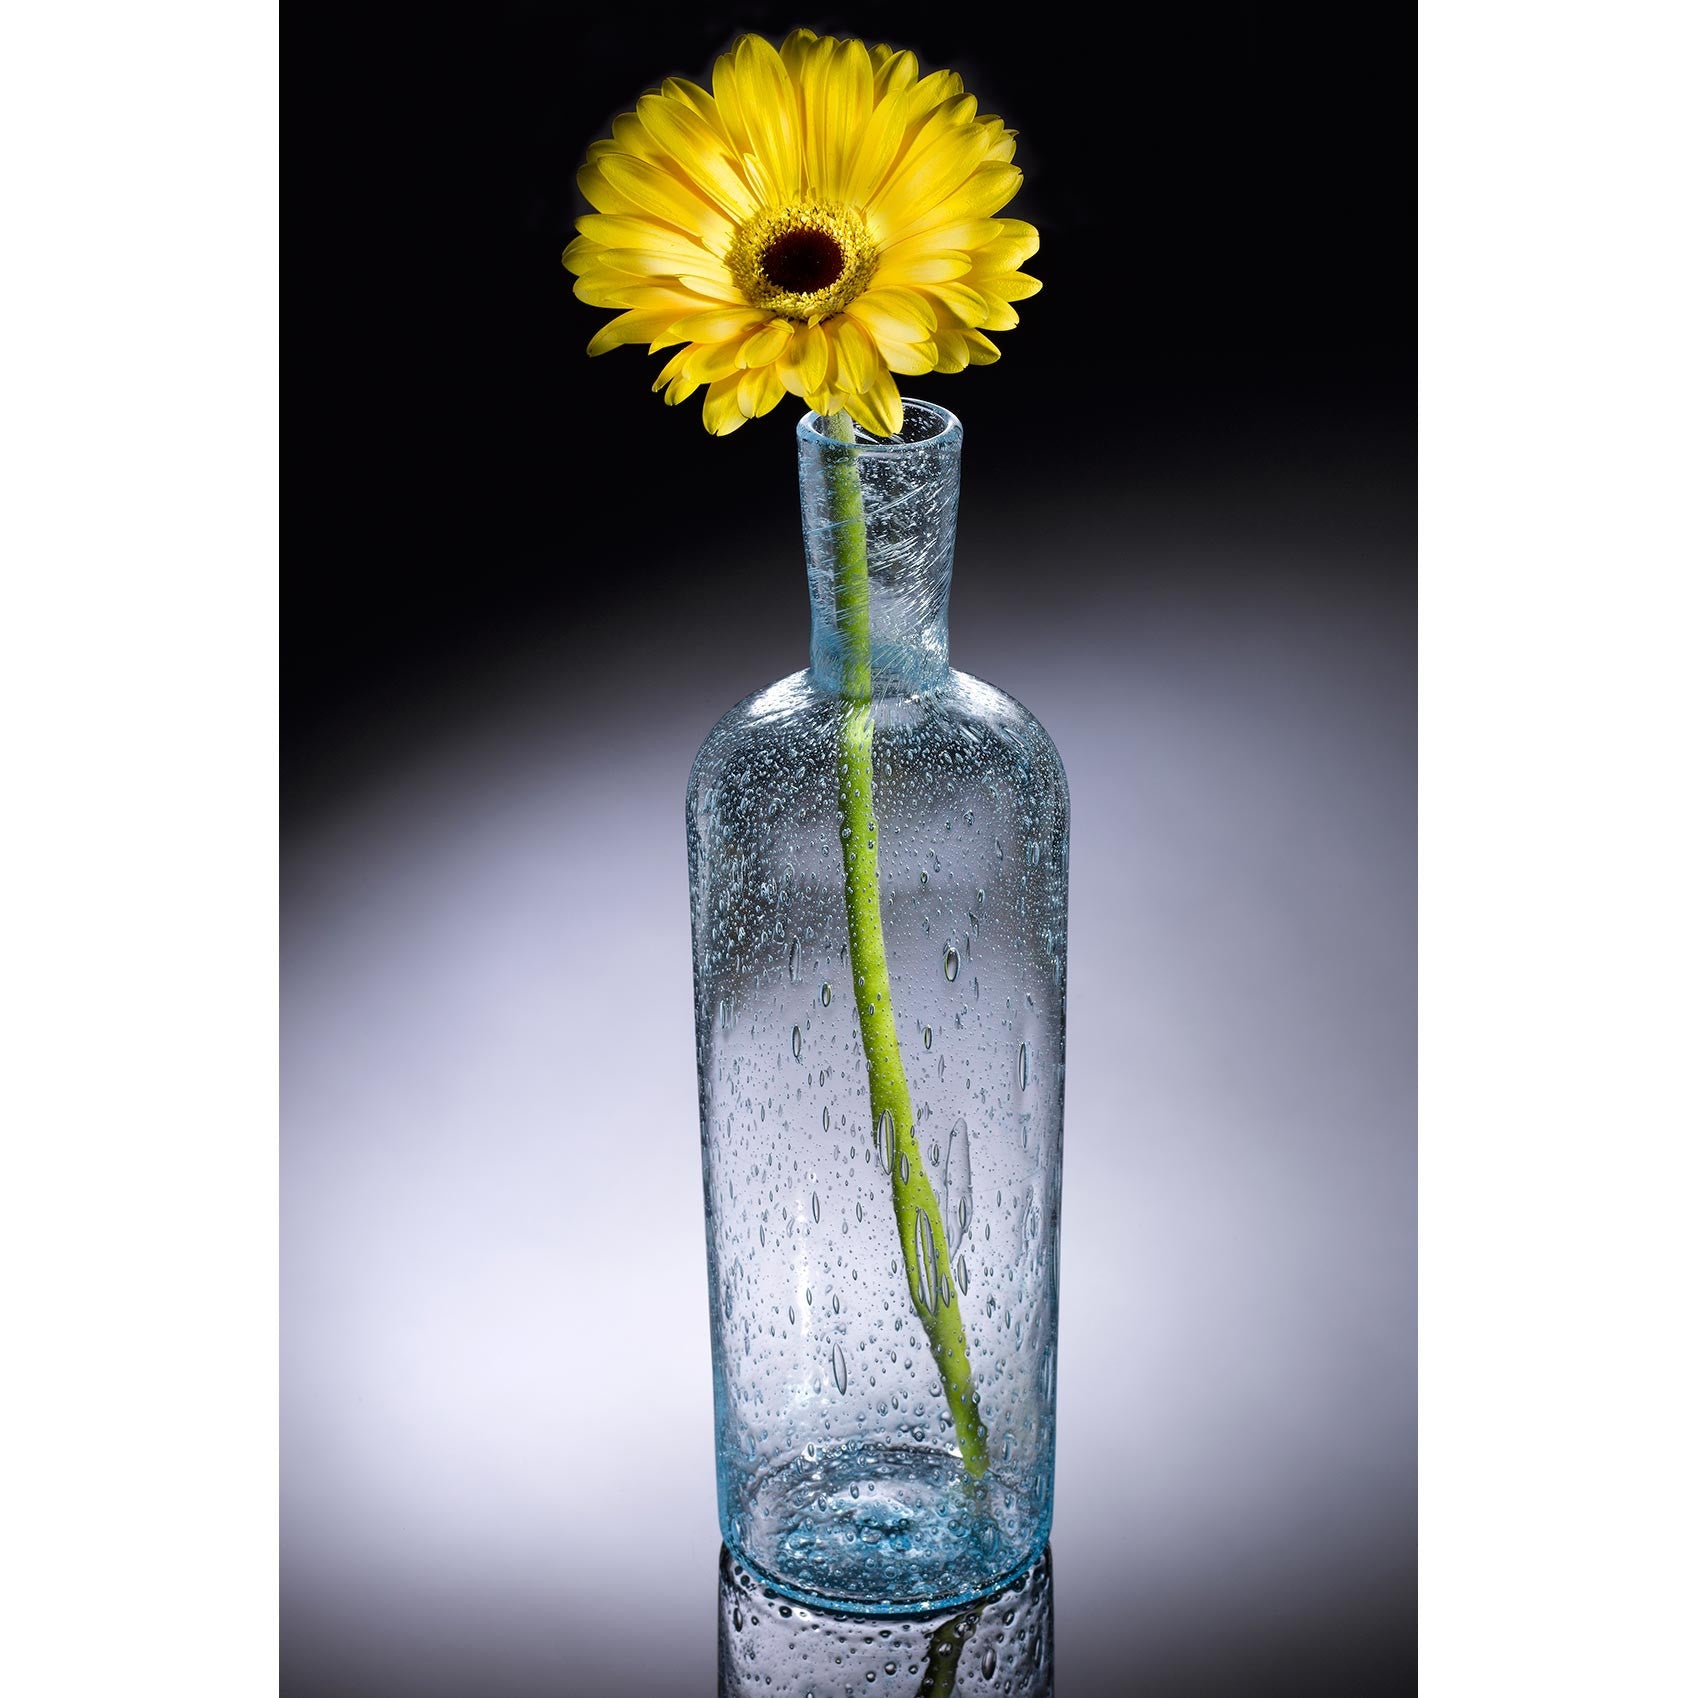 https://www.sweetheartgallery.com/cdn/shop/products/Hot-Glass-Alley-Jake-Pfeifer-Nautical-Series-Rum-Runner-Bottle-Artistic-Hand-Blown-Glass.jpeg?v=1477923885